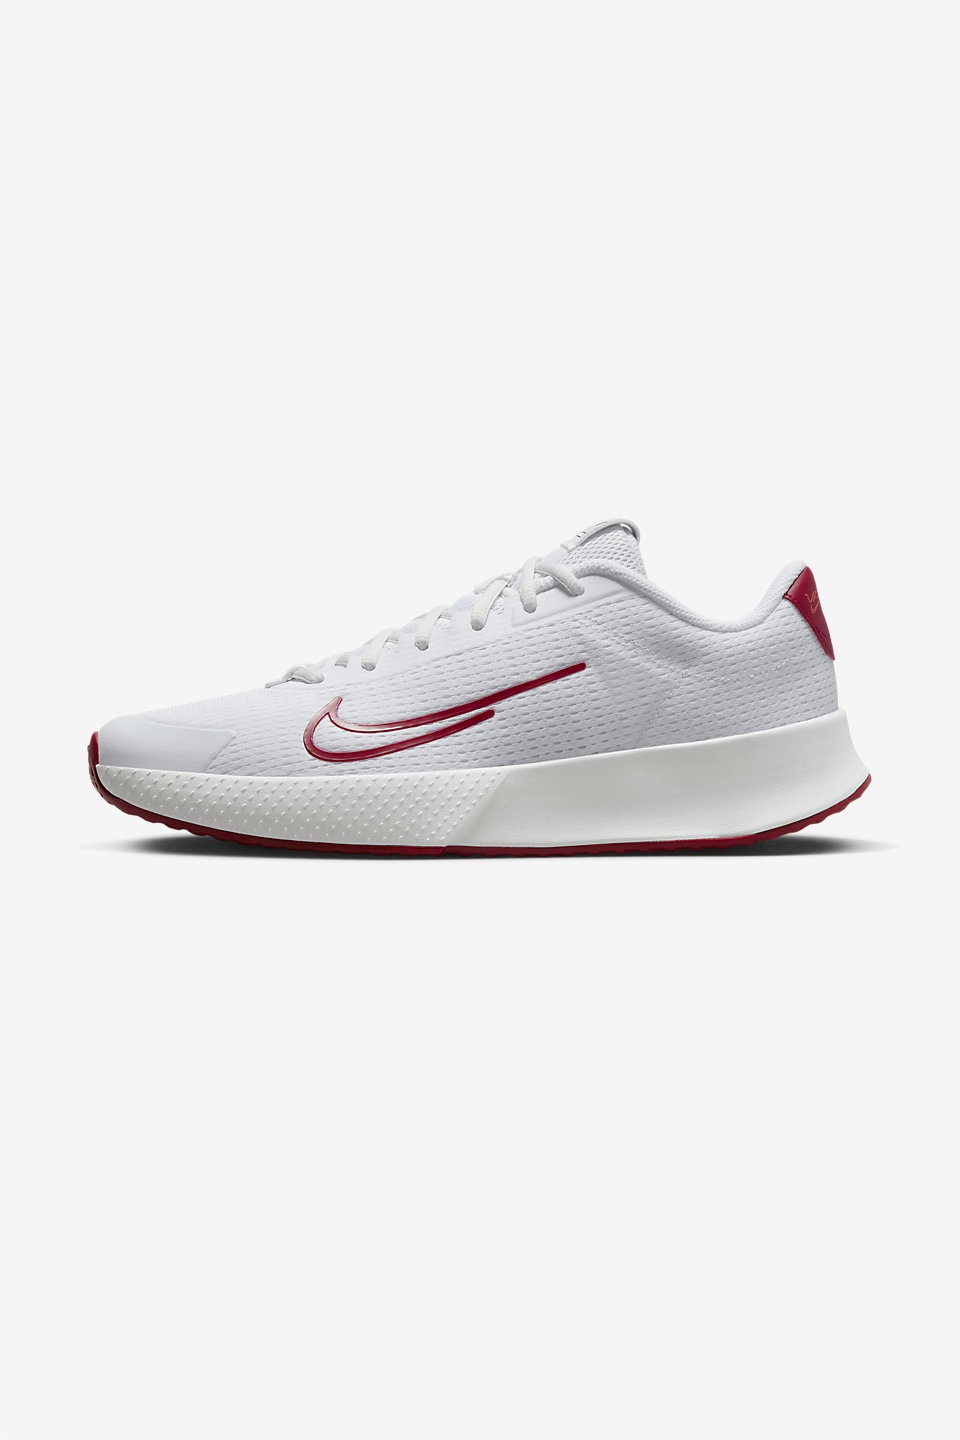 NIKE - NikeCourt Vapor Lite 2 Sert Kort Erkek Tenis Ayakkabısı 